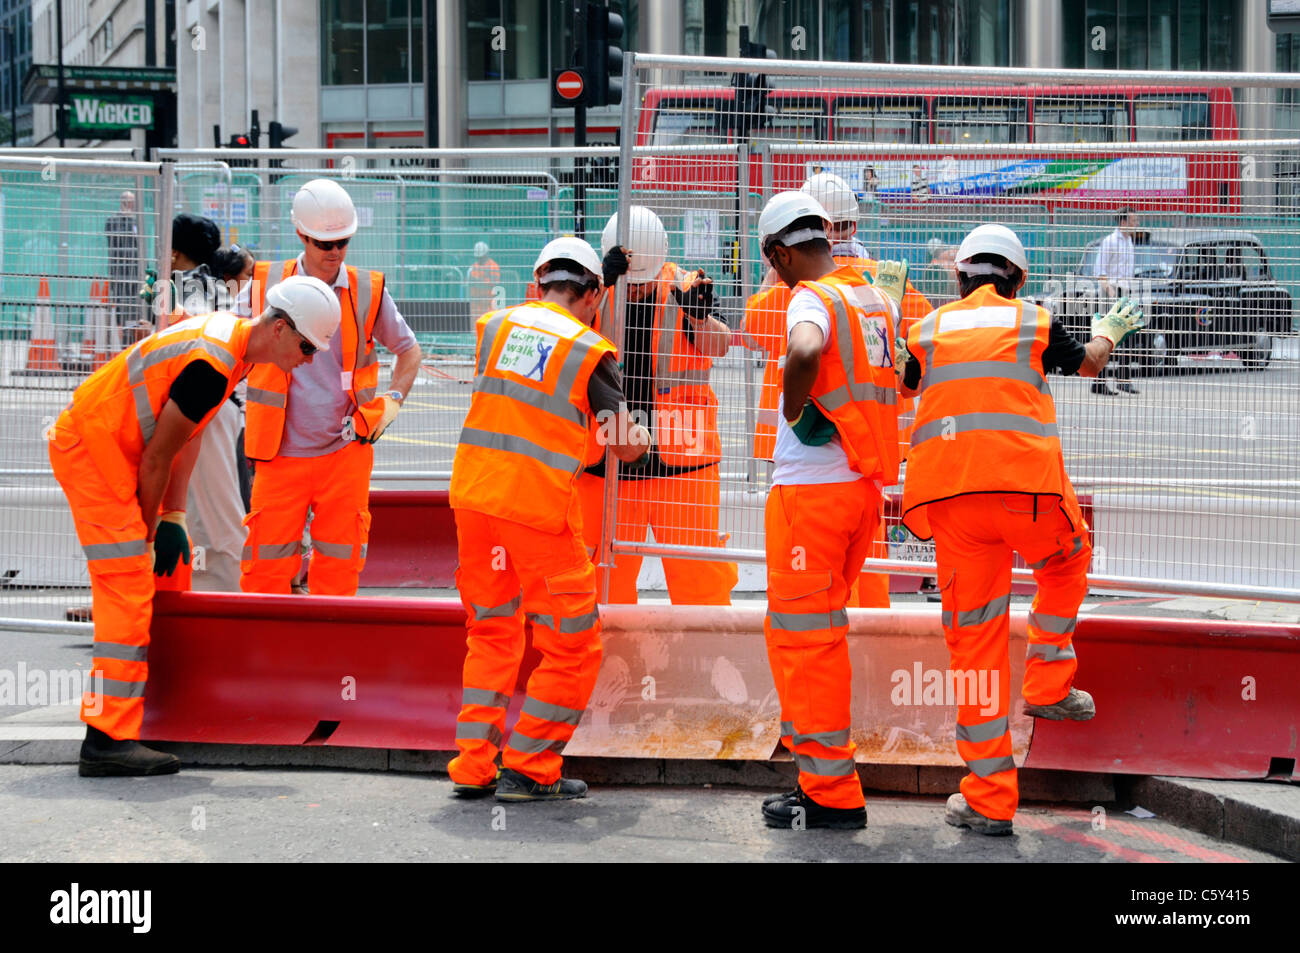 Travail d'équipe travailler ensemble de nombreuses mains font un travail léger sept ouvriers vêtements de haute visibilité mettent des clôtures en acier travaux routiers dans Victoria Londres Angleterre Royaume-Uni Banque D'Images